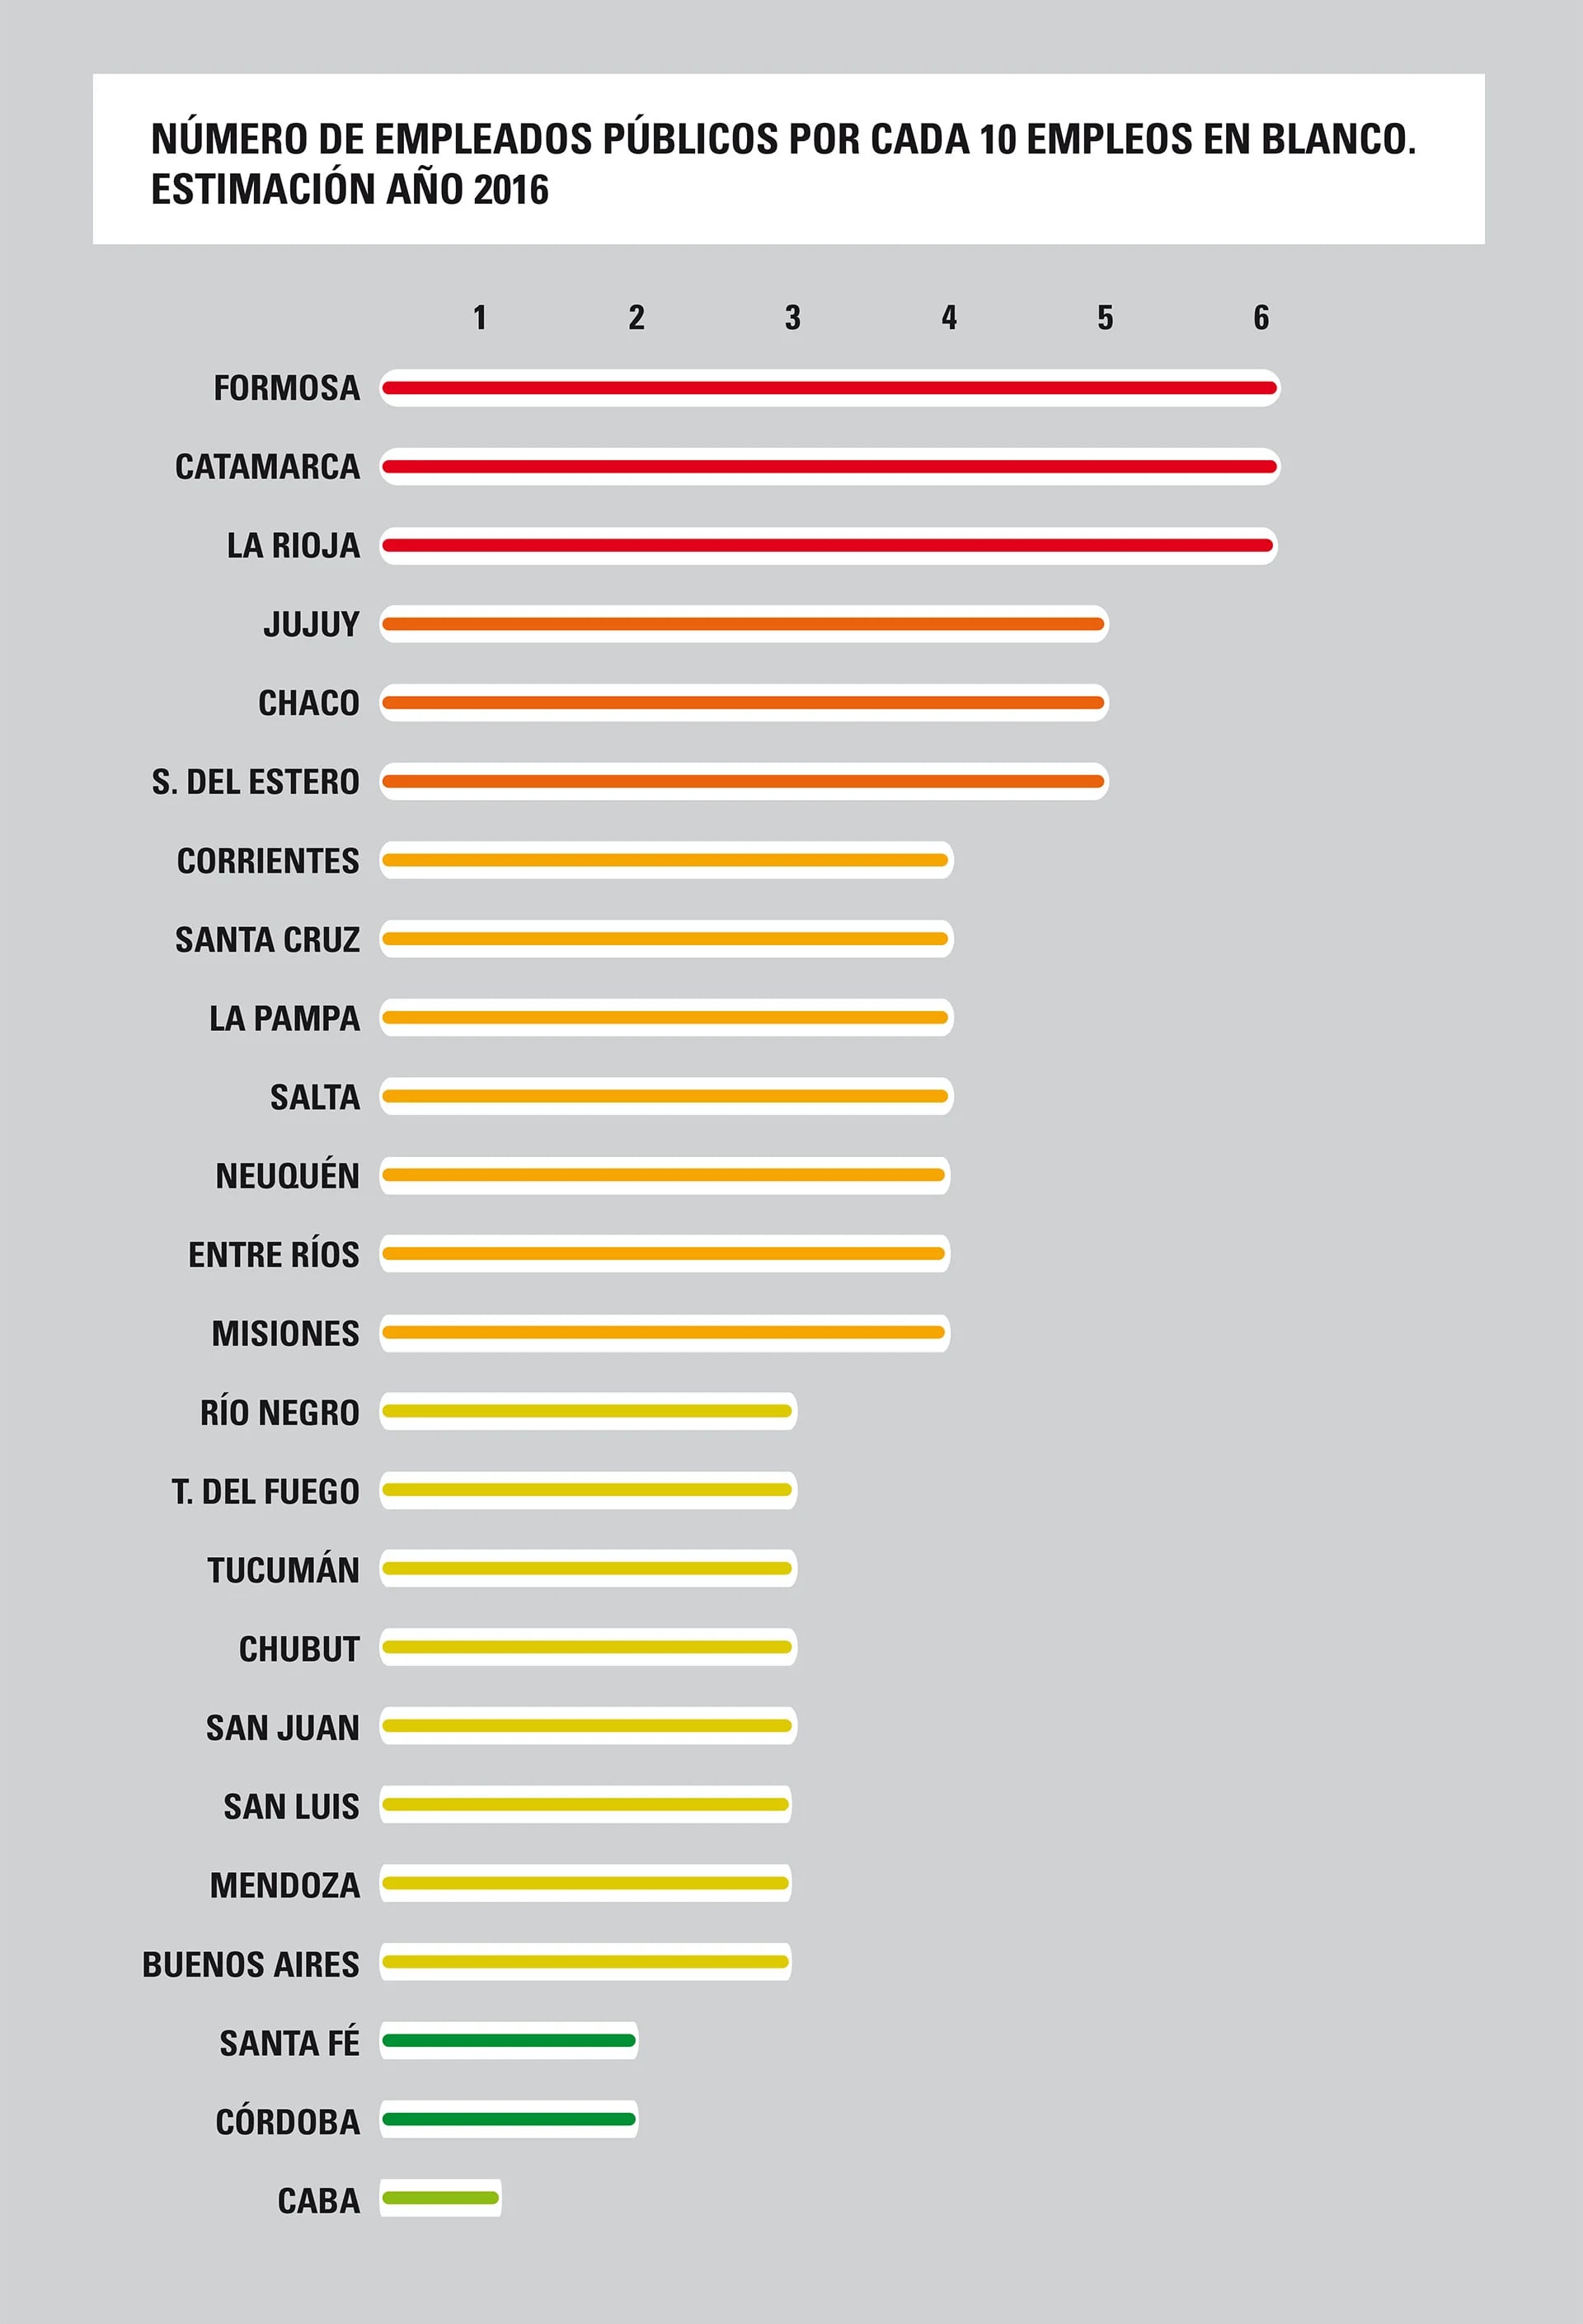 Formosa, Catamarca y La Rioja encabezan el ranking de empleo público provincial.